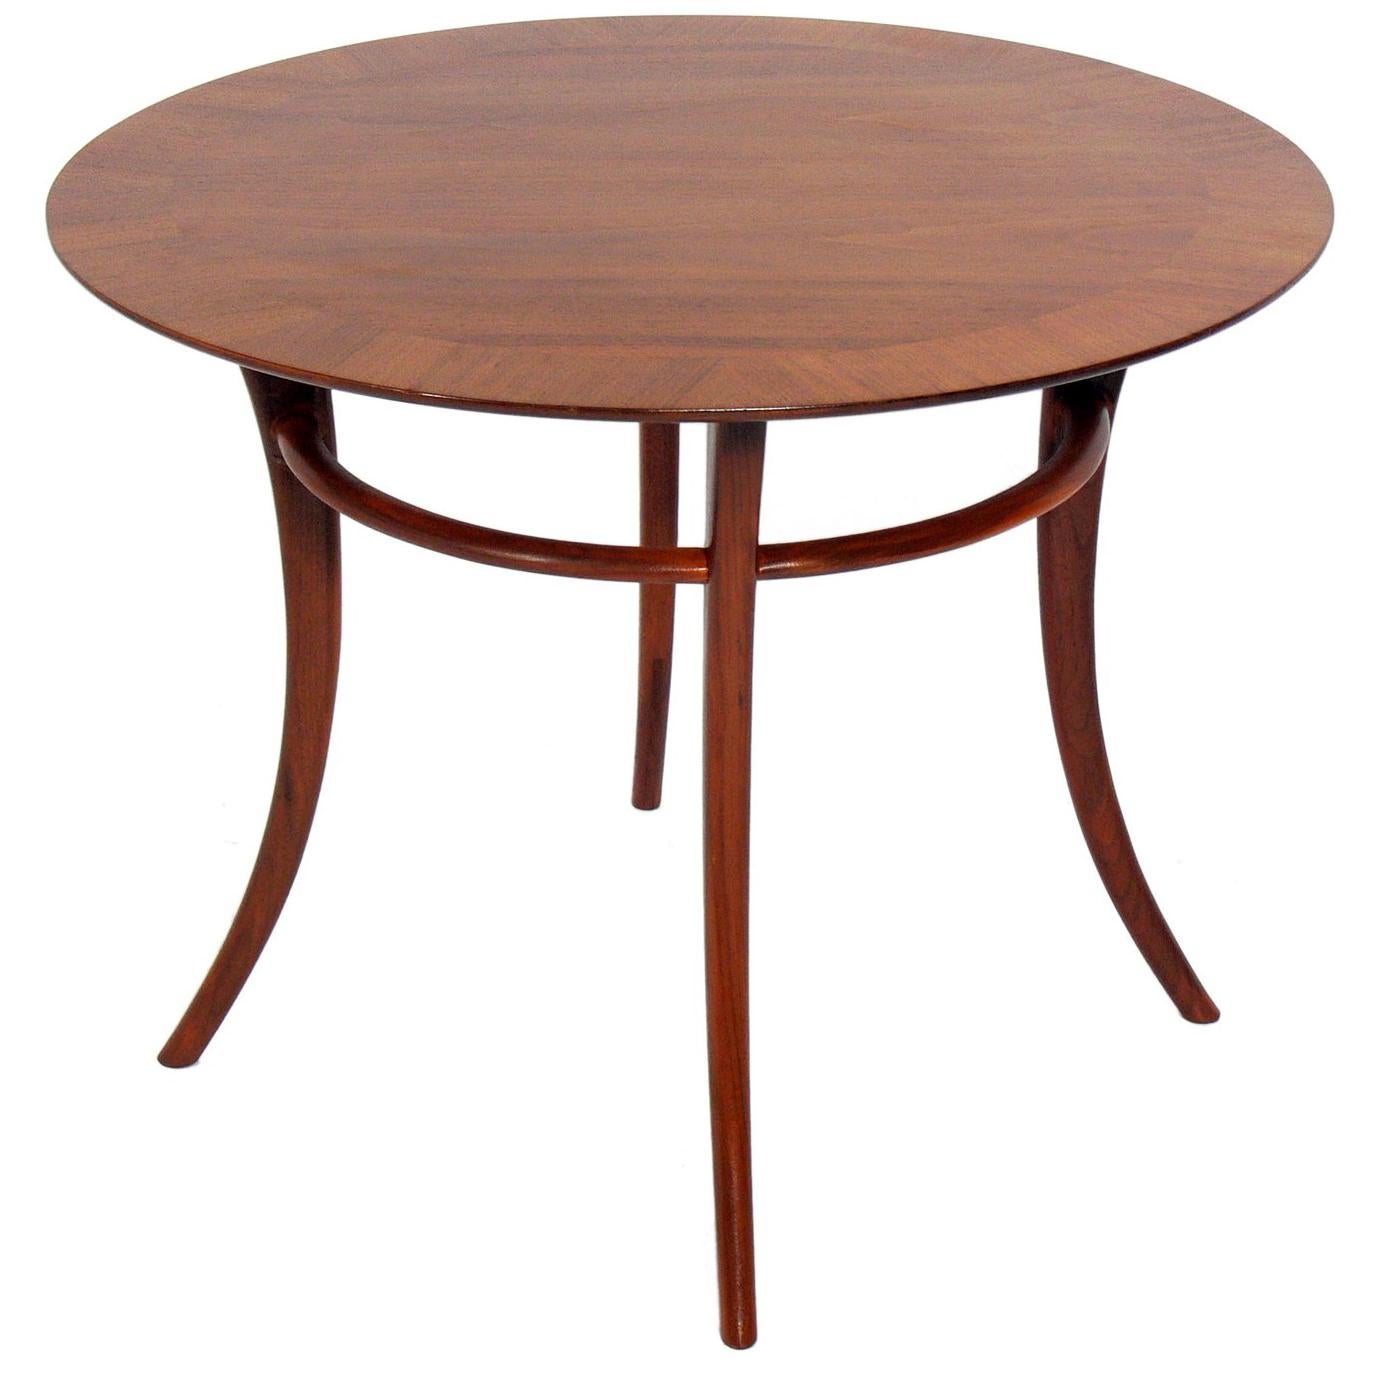 Tables d'appoint à pieds Klismos, conçues par T.H. Robsjohn-Gibbings pour Widdicomb, américain, vers les années 1950. UN SEUL EST DISPONIBLE. 